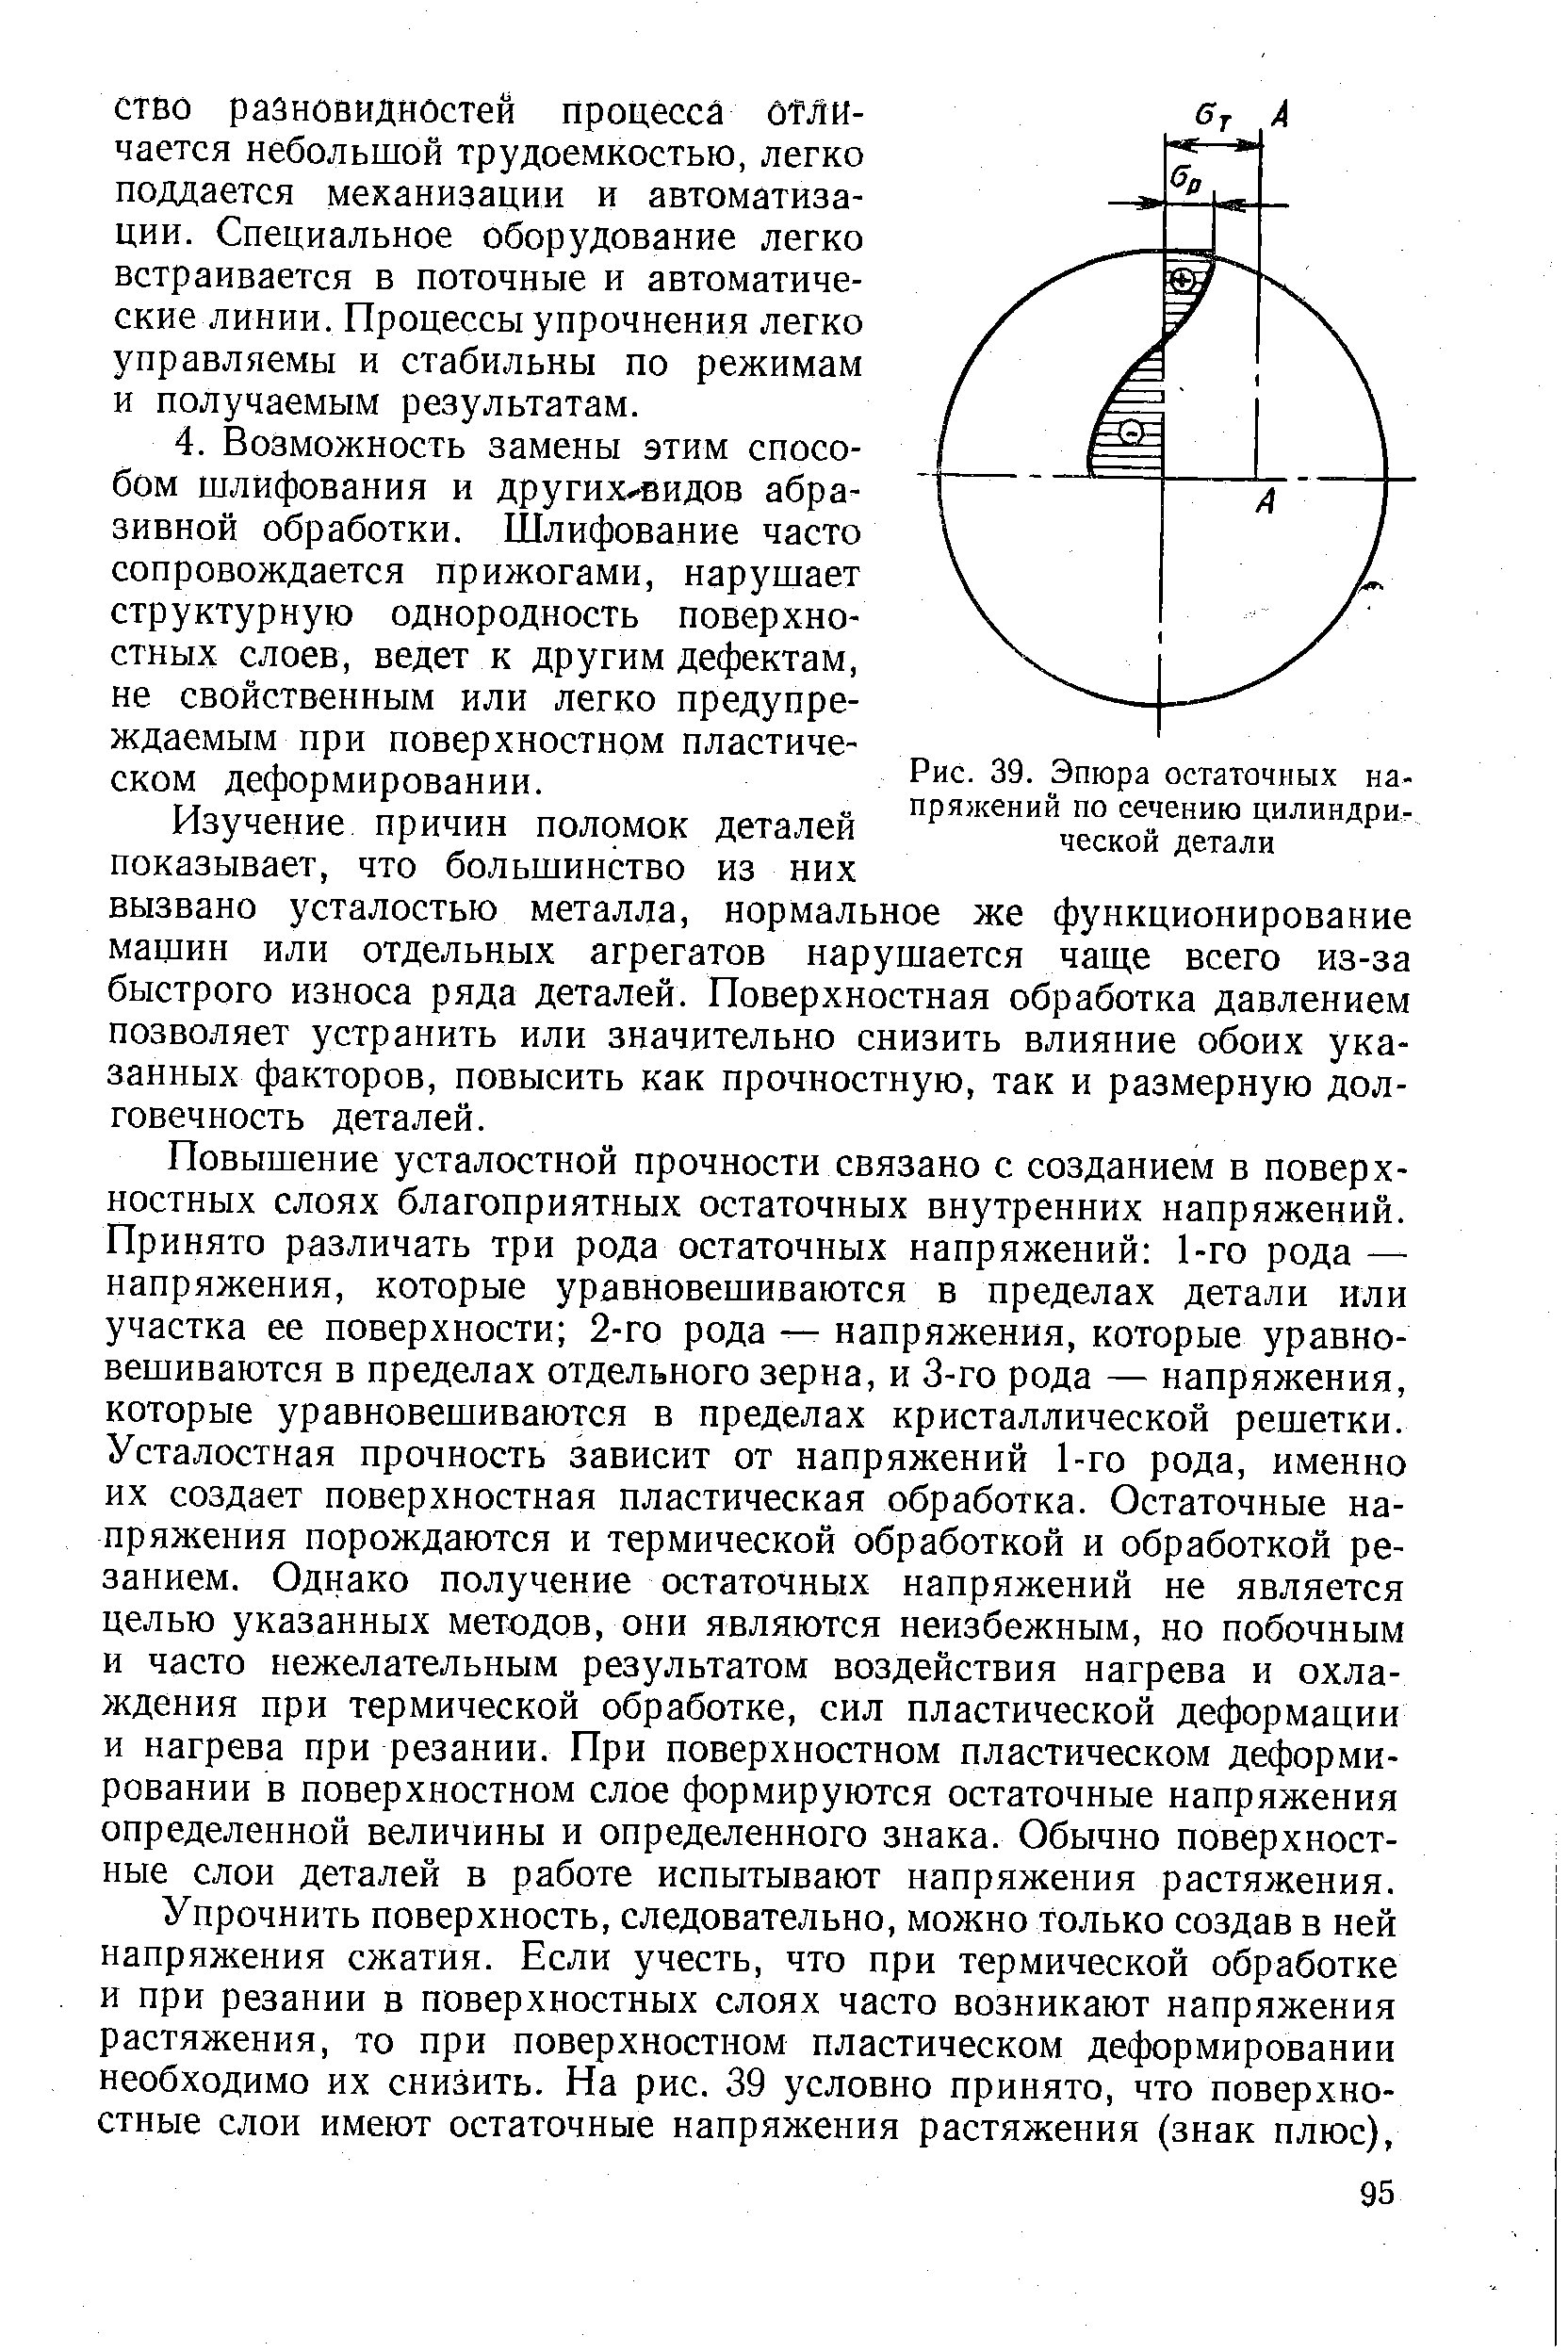 Рис. 39. Эпюра остаточных напряжений по сечению цилиндрической детали
